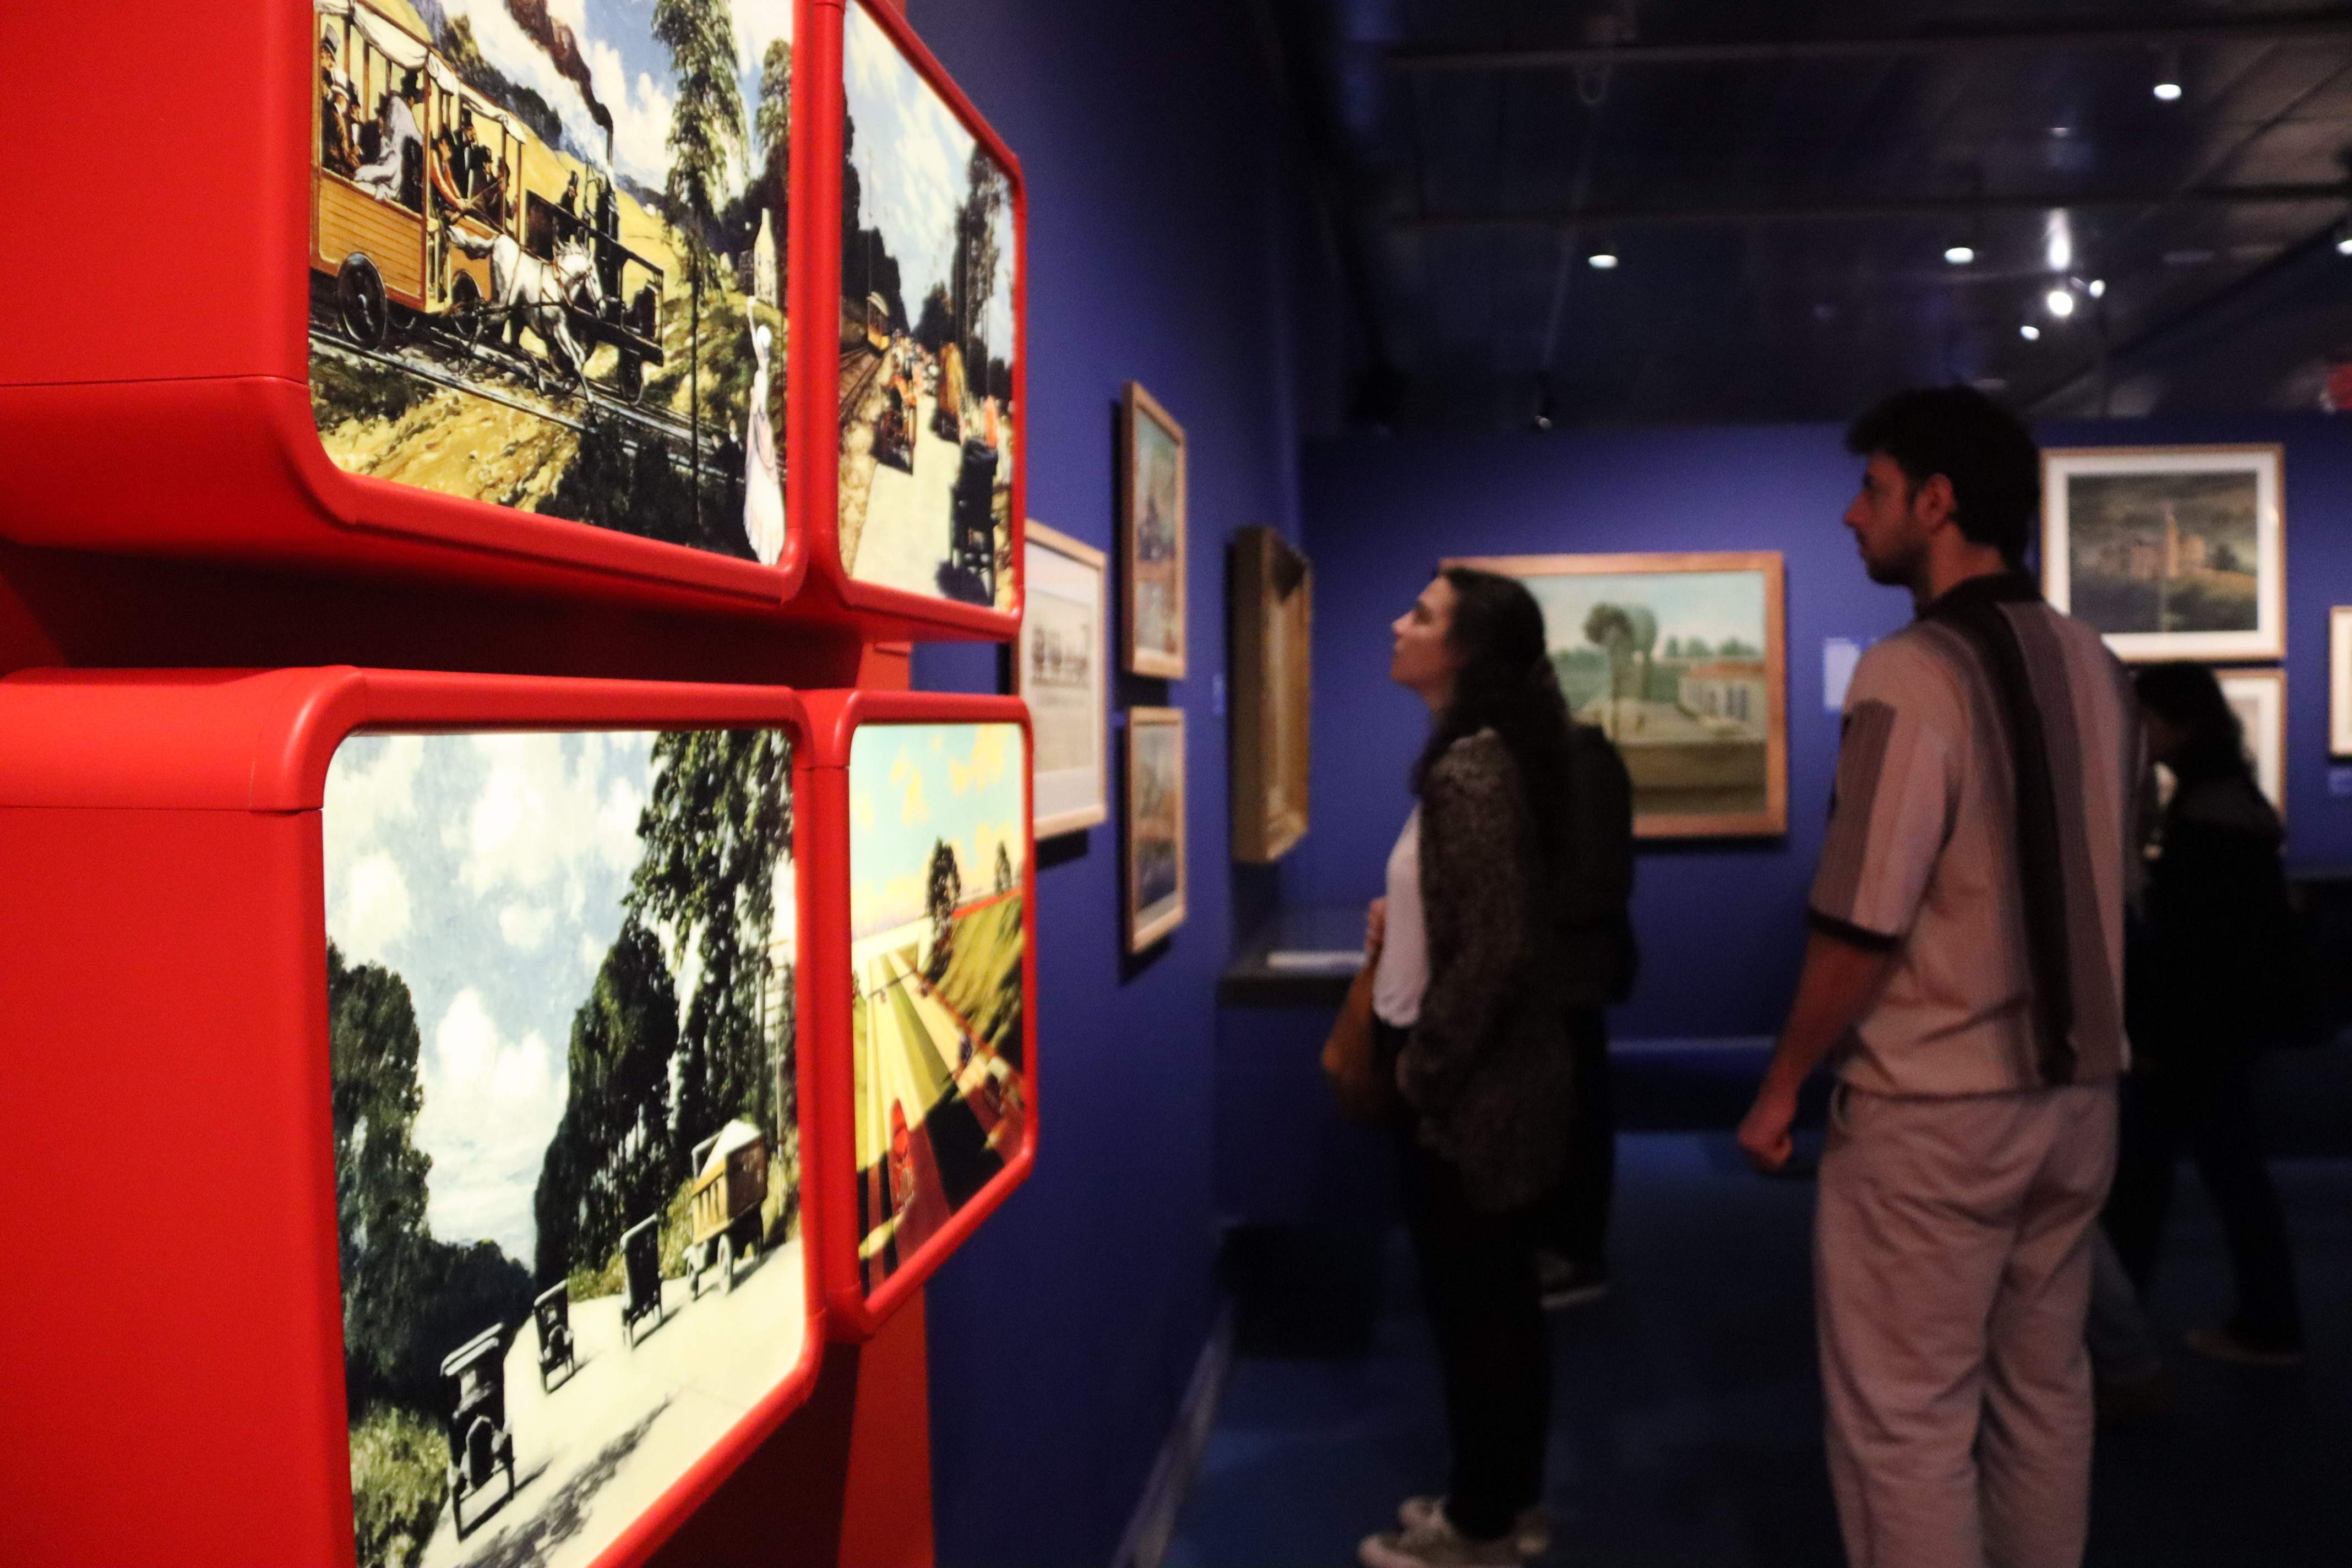 El MNAC, el MUHBA i el Cosmocaixa, els més visitats durant la Nit dels Museus